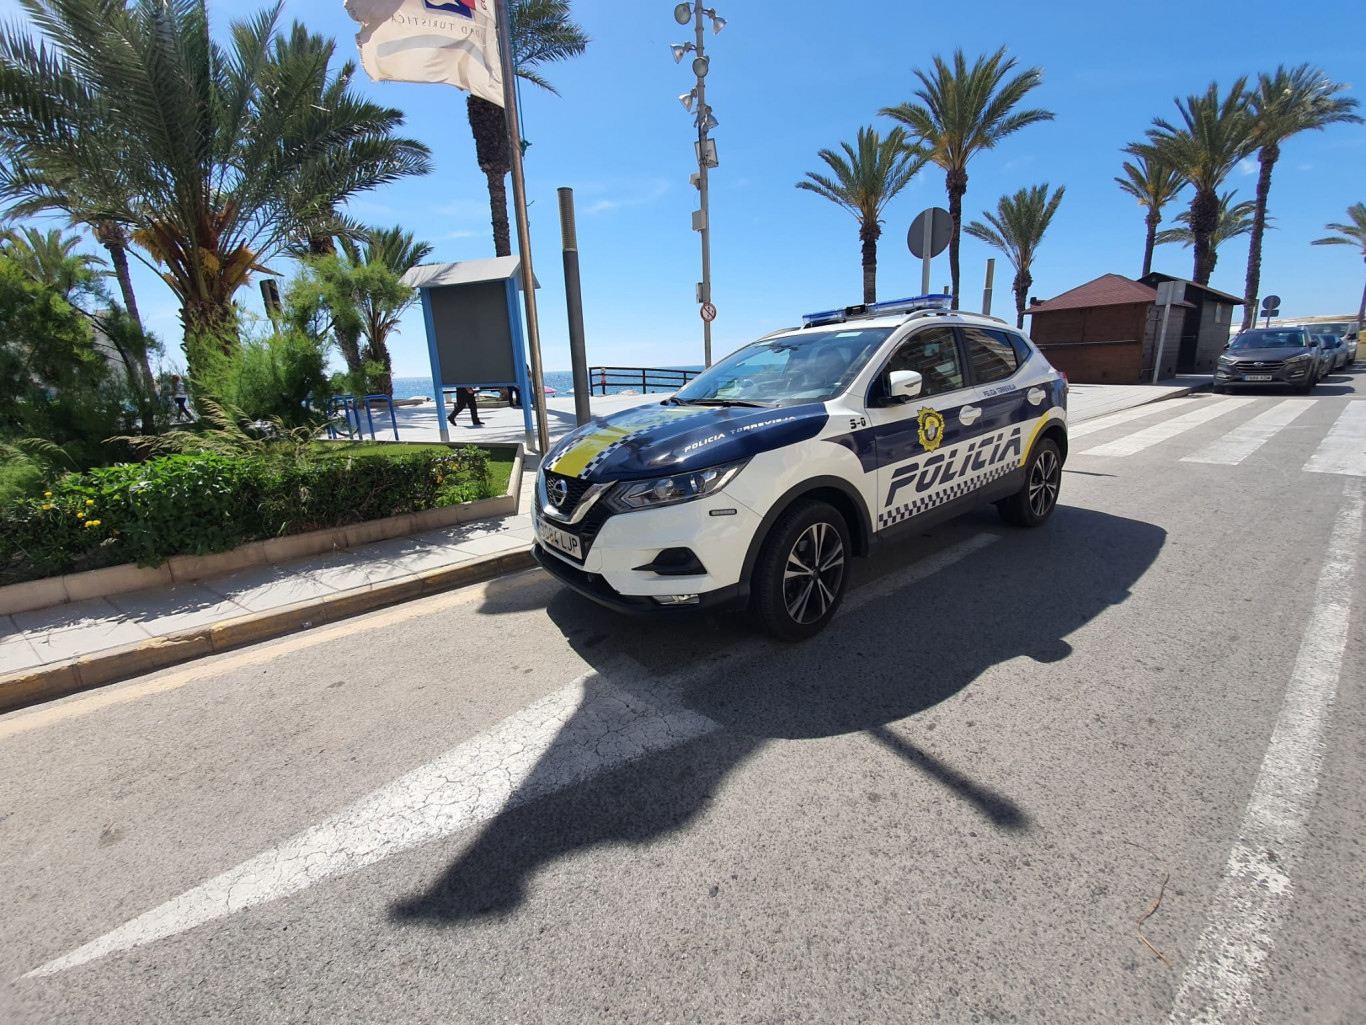 Coche patrulla de la policía local de Torrevieja